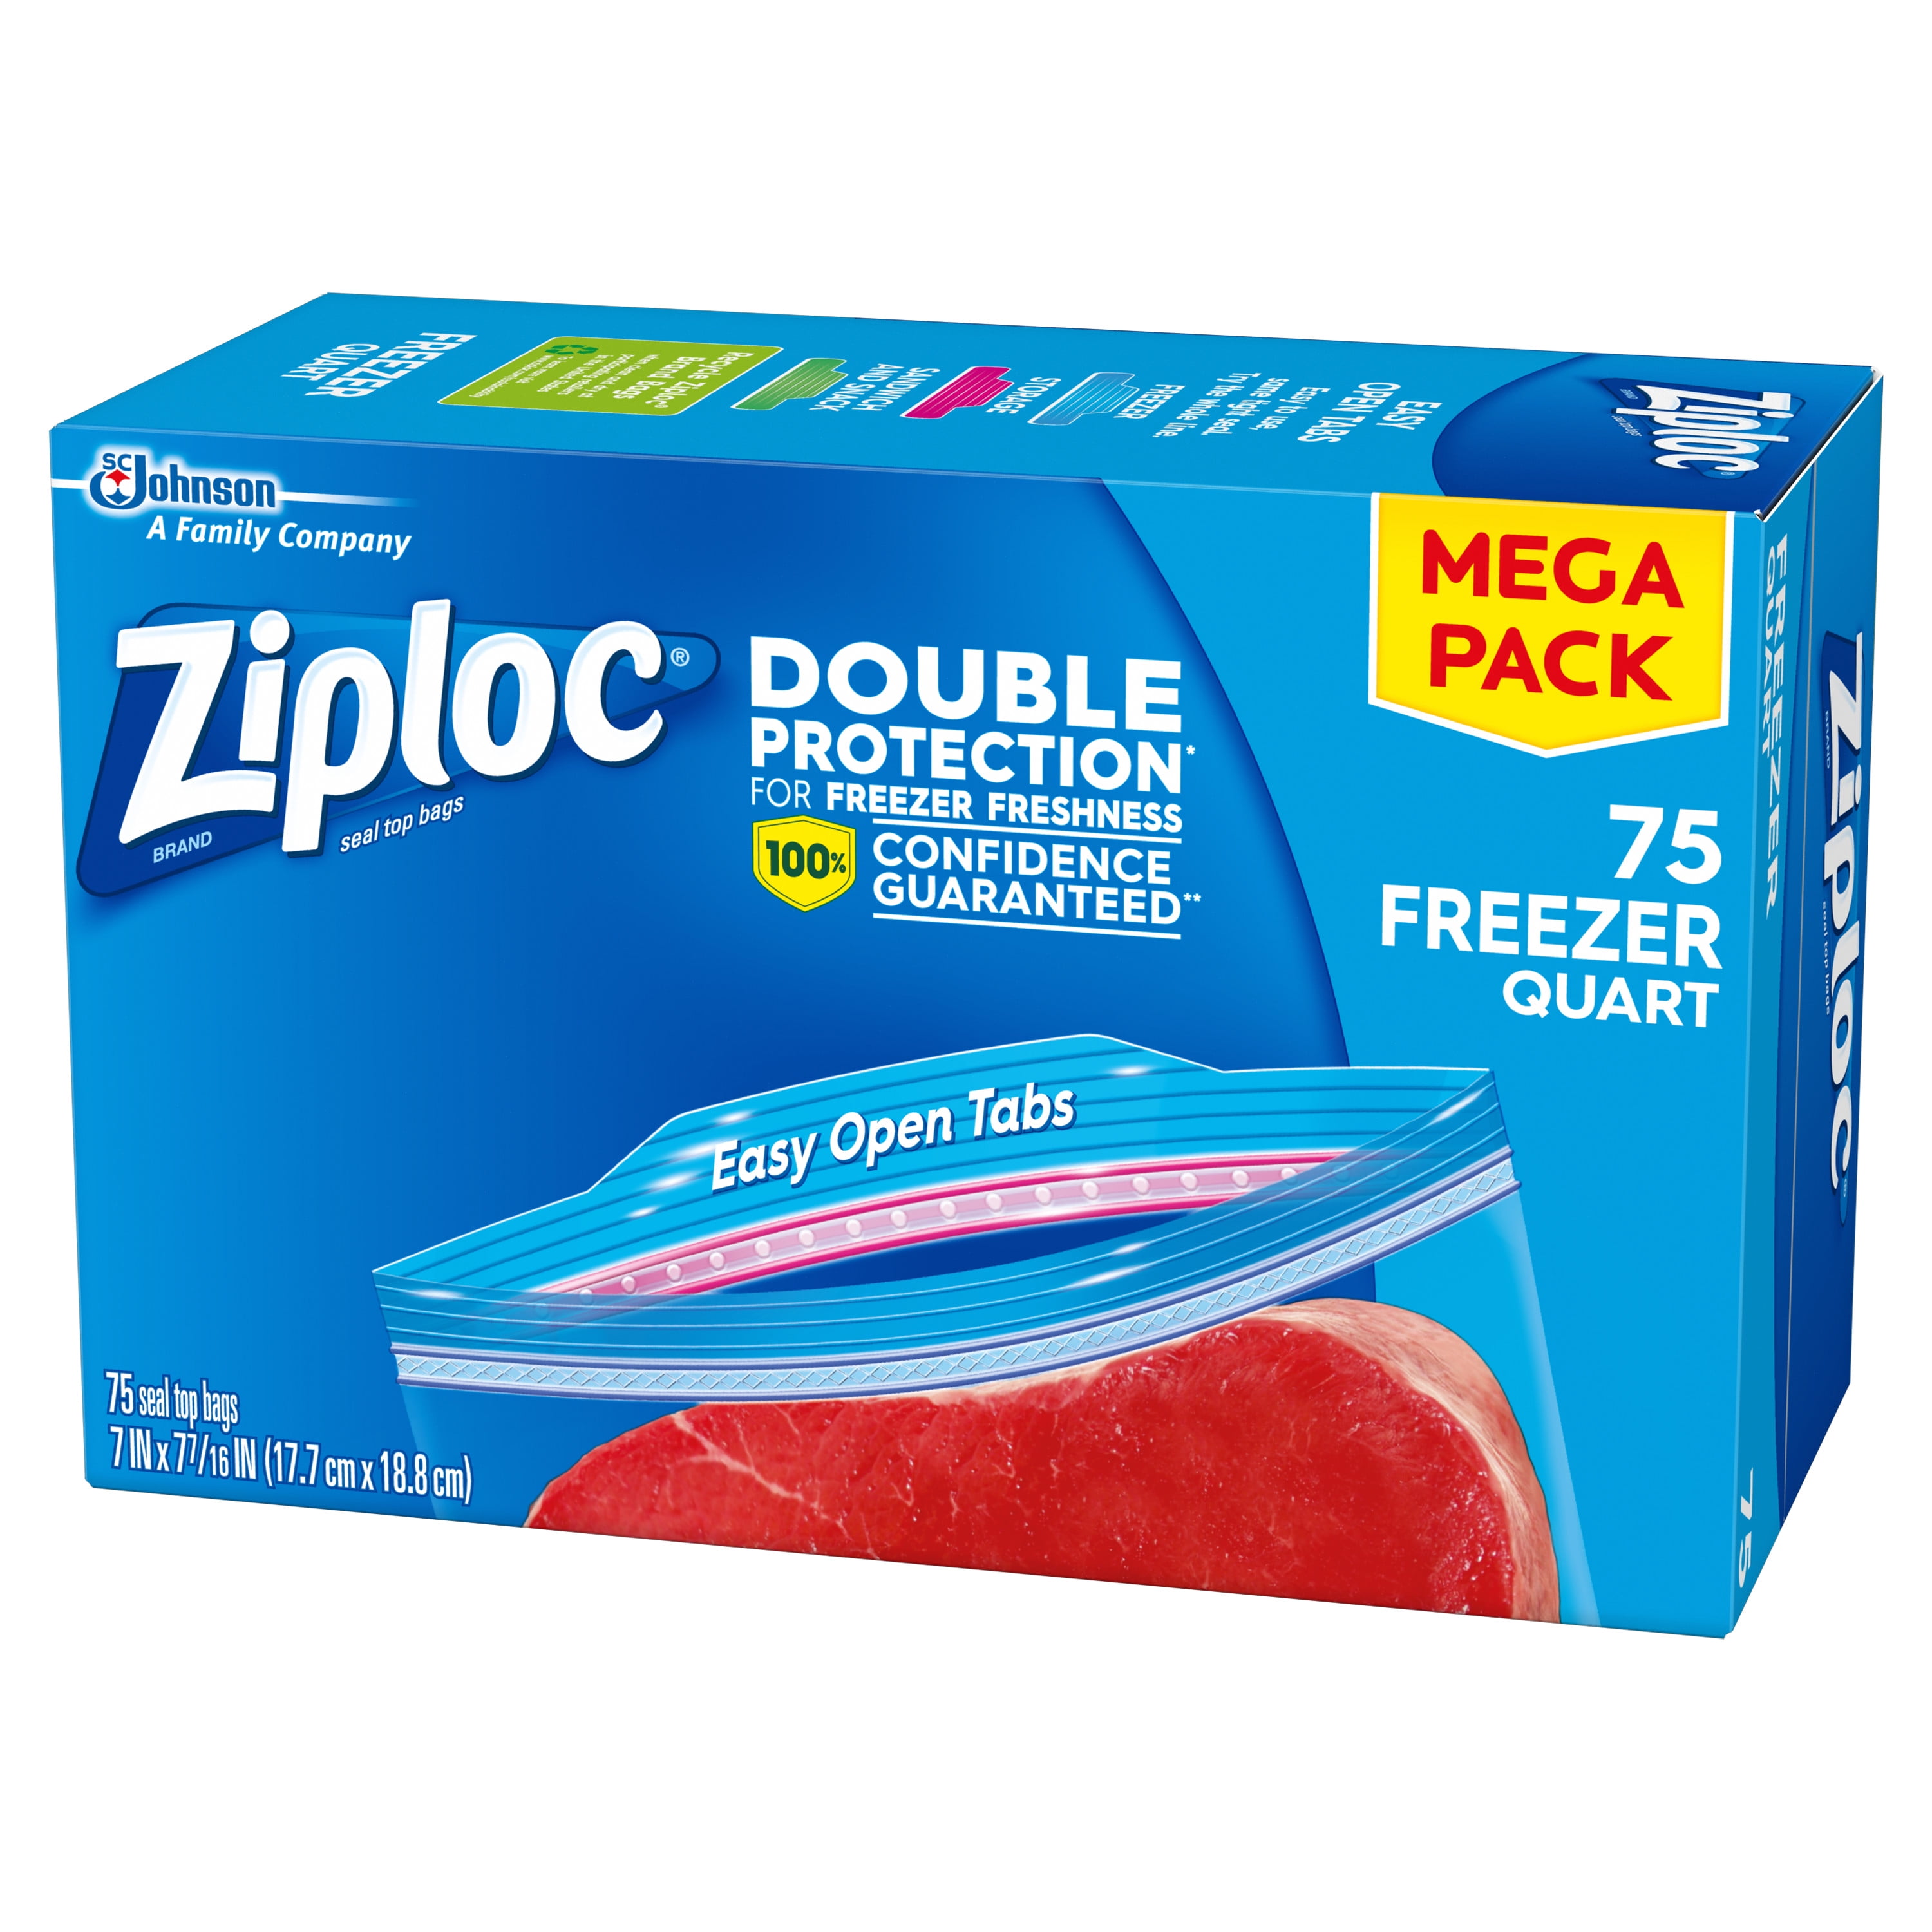 Ziploc Freezer Bags Gallon 14ct – BevMo!